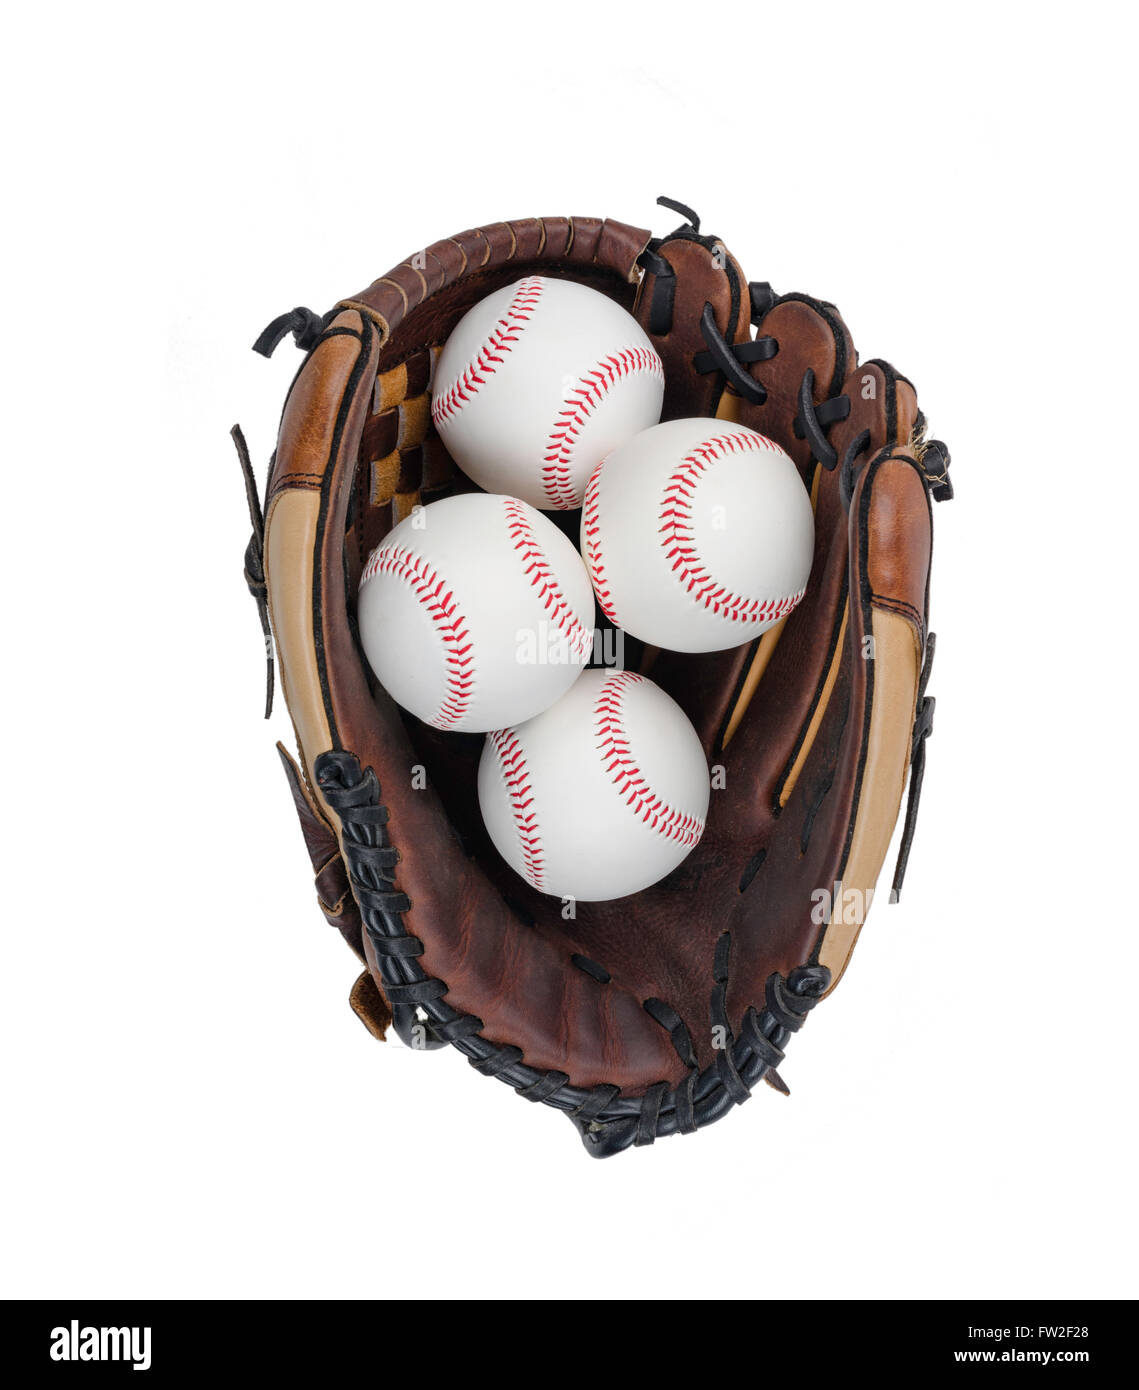 Baseball Glove with Four Baseballs Isolated on White Background. Stock Photo